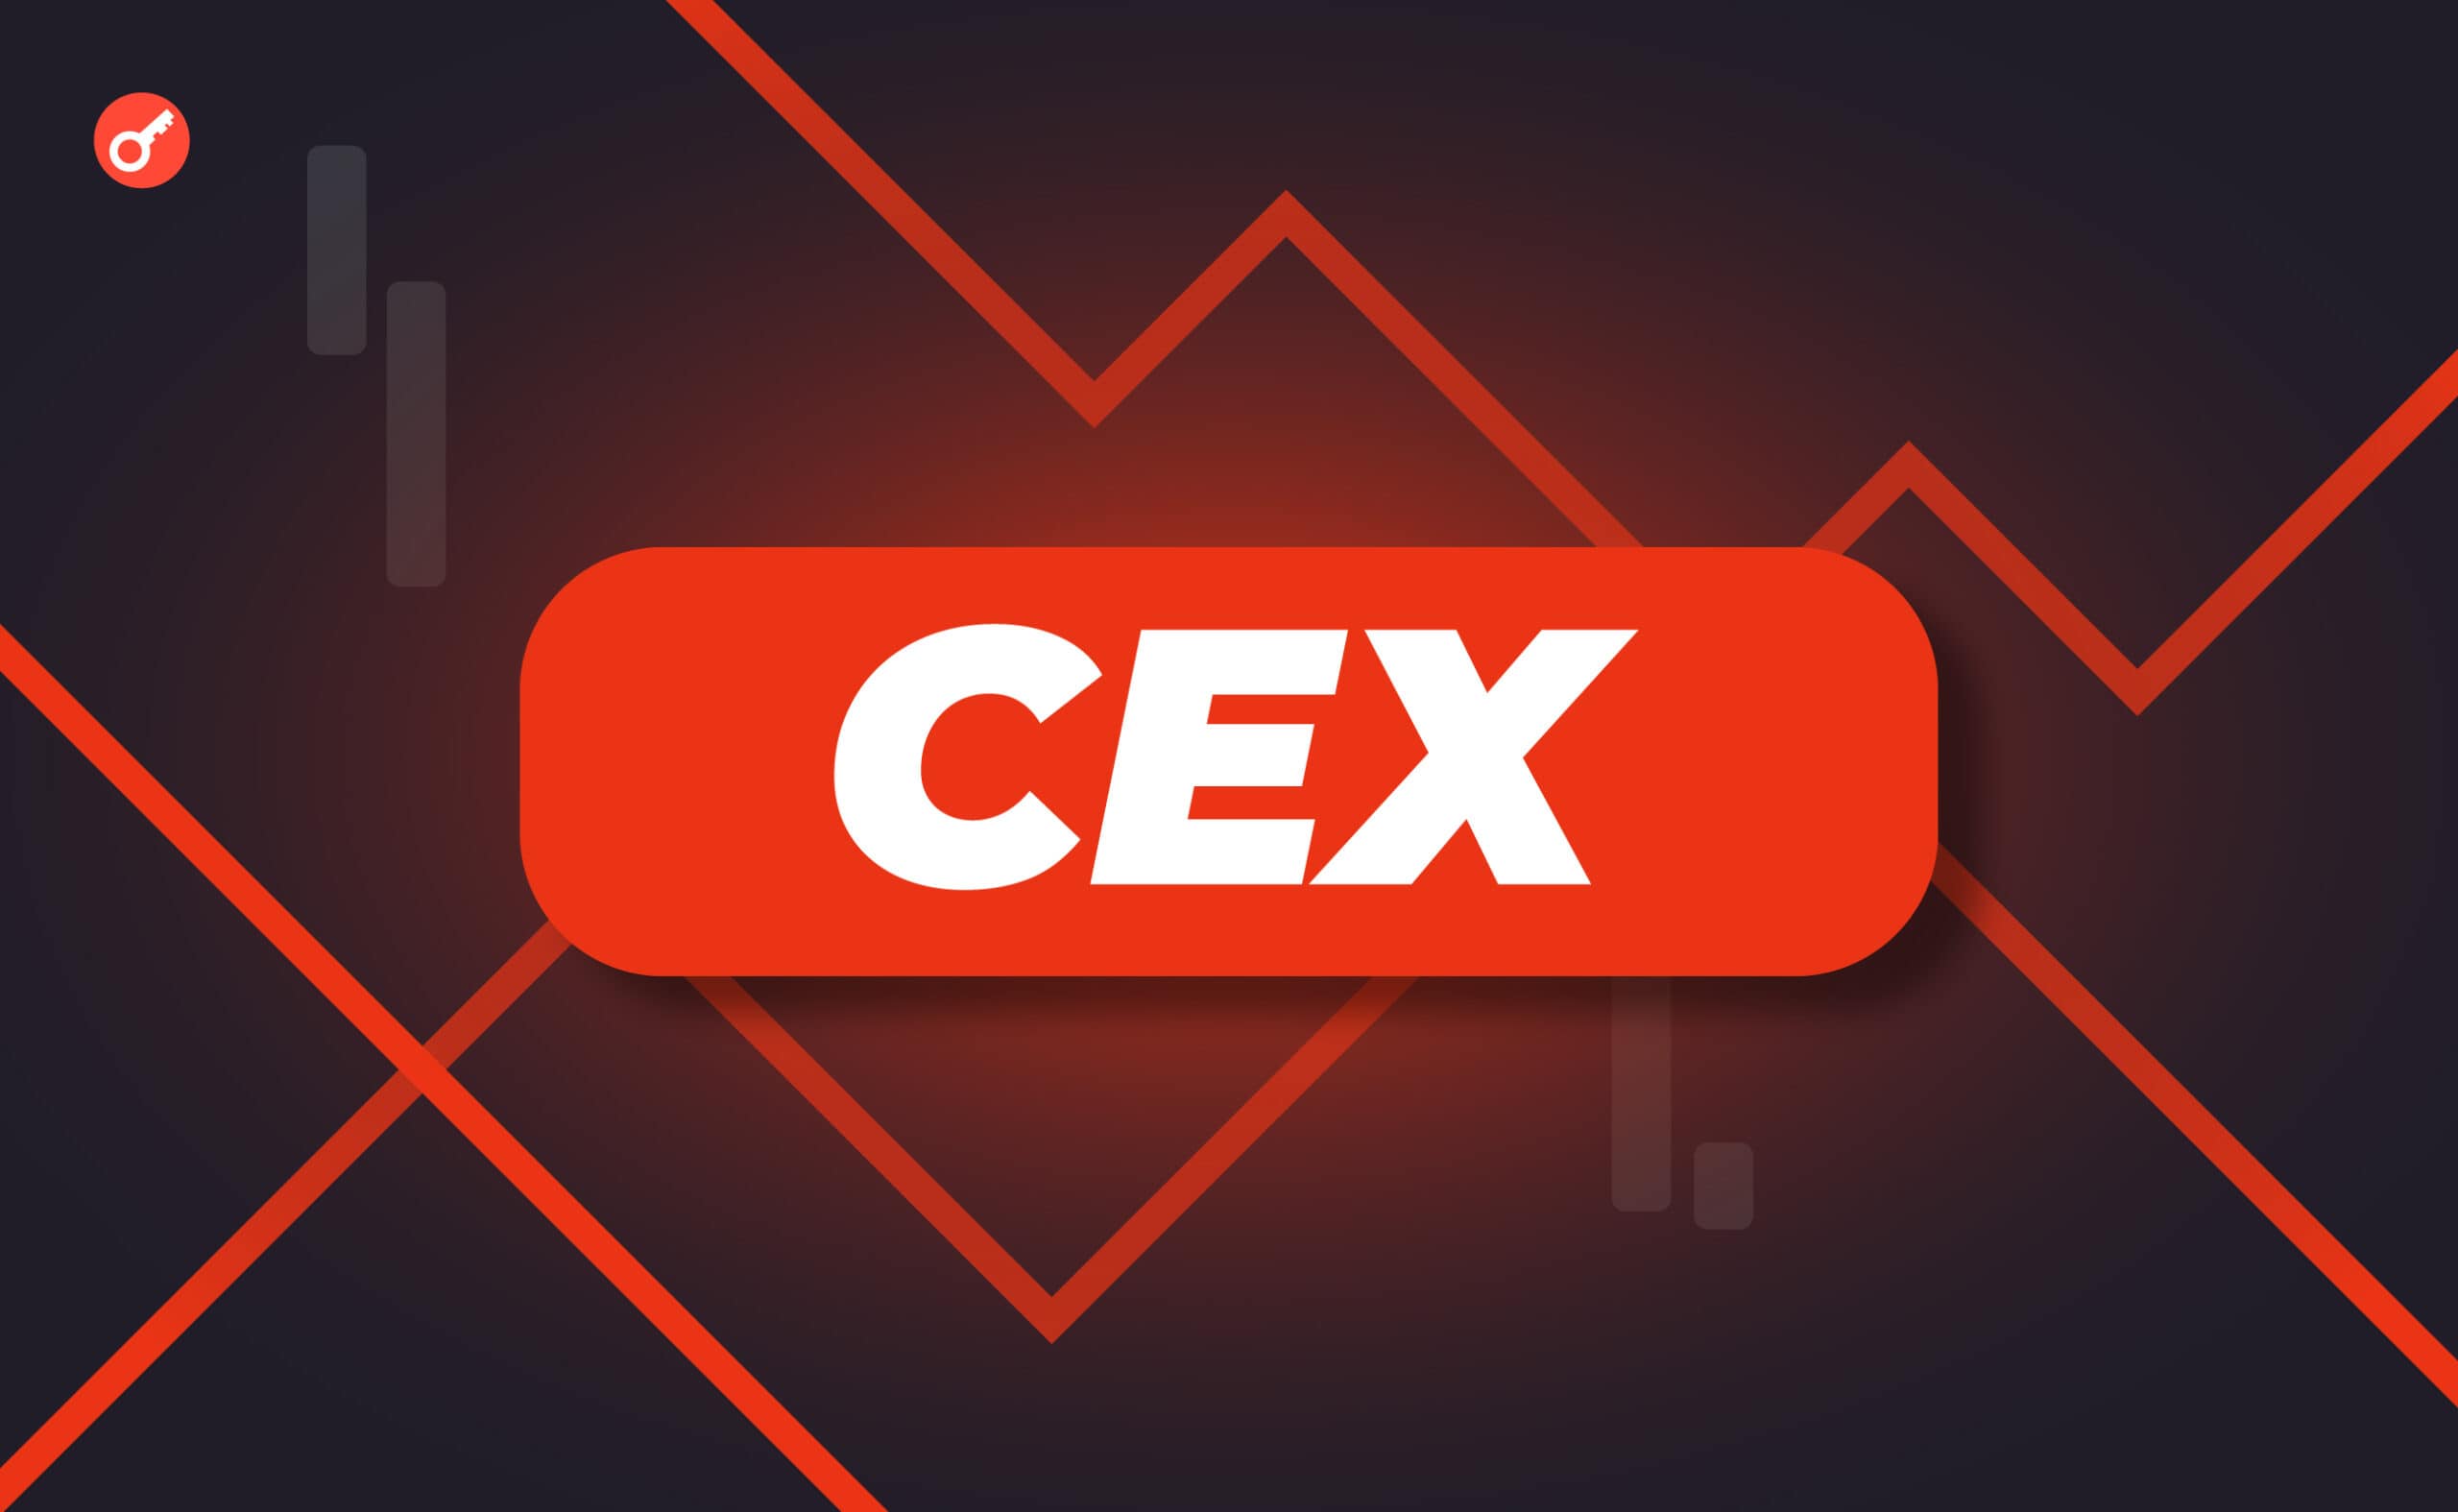 Обсяг торгів CEX у квітні впав майже вдвічі. Головний колаж новини.